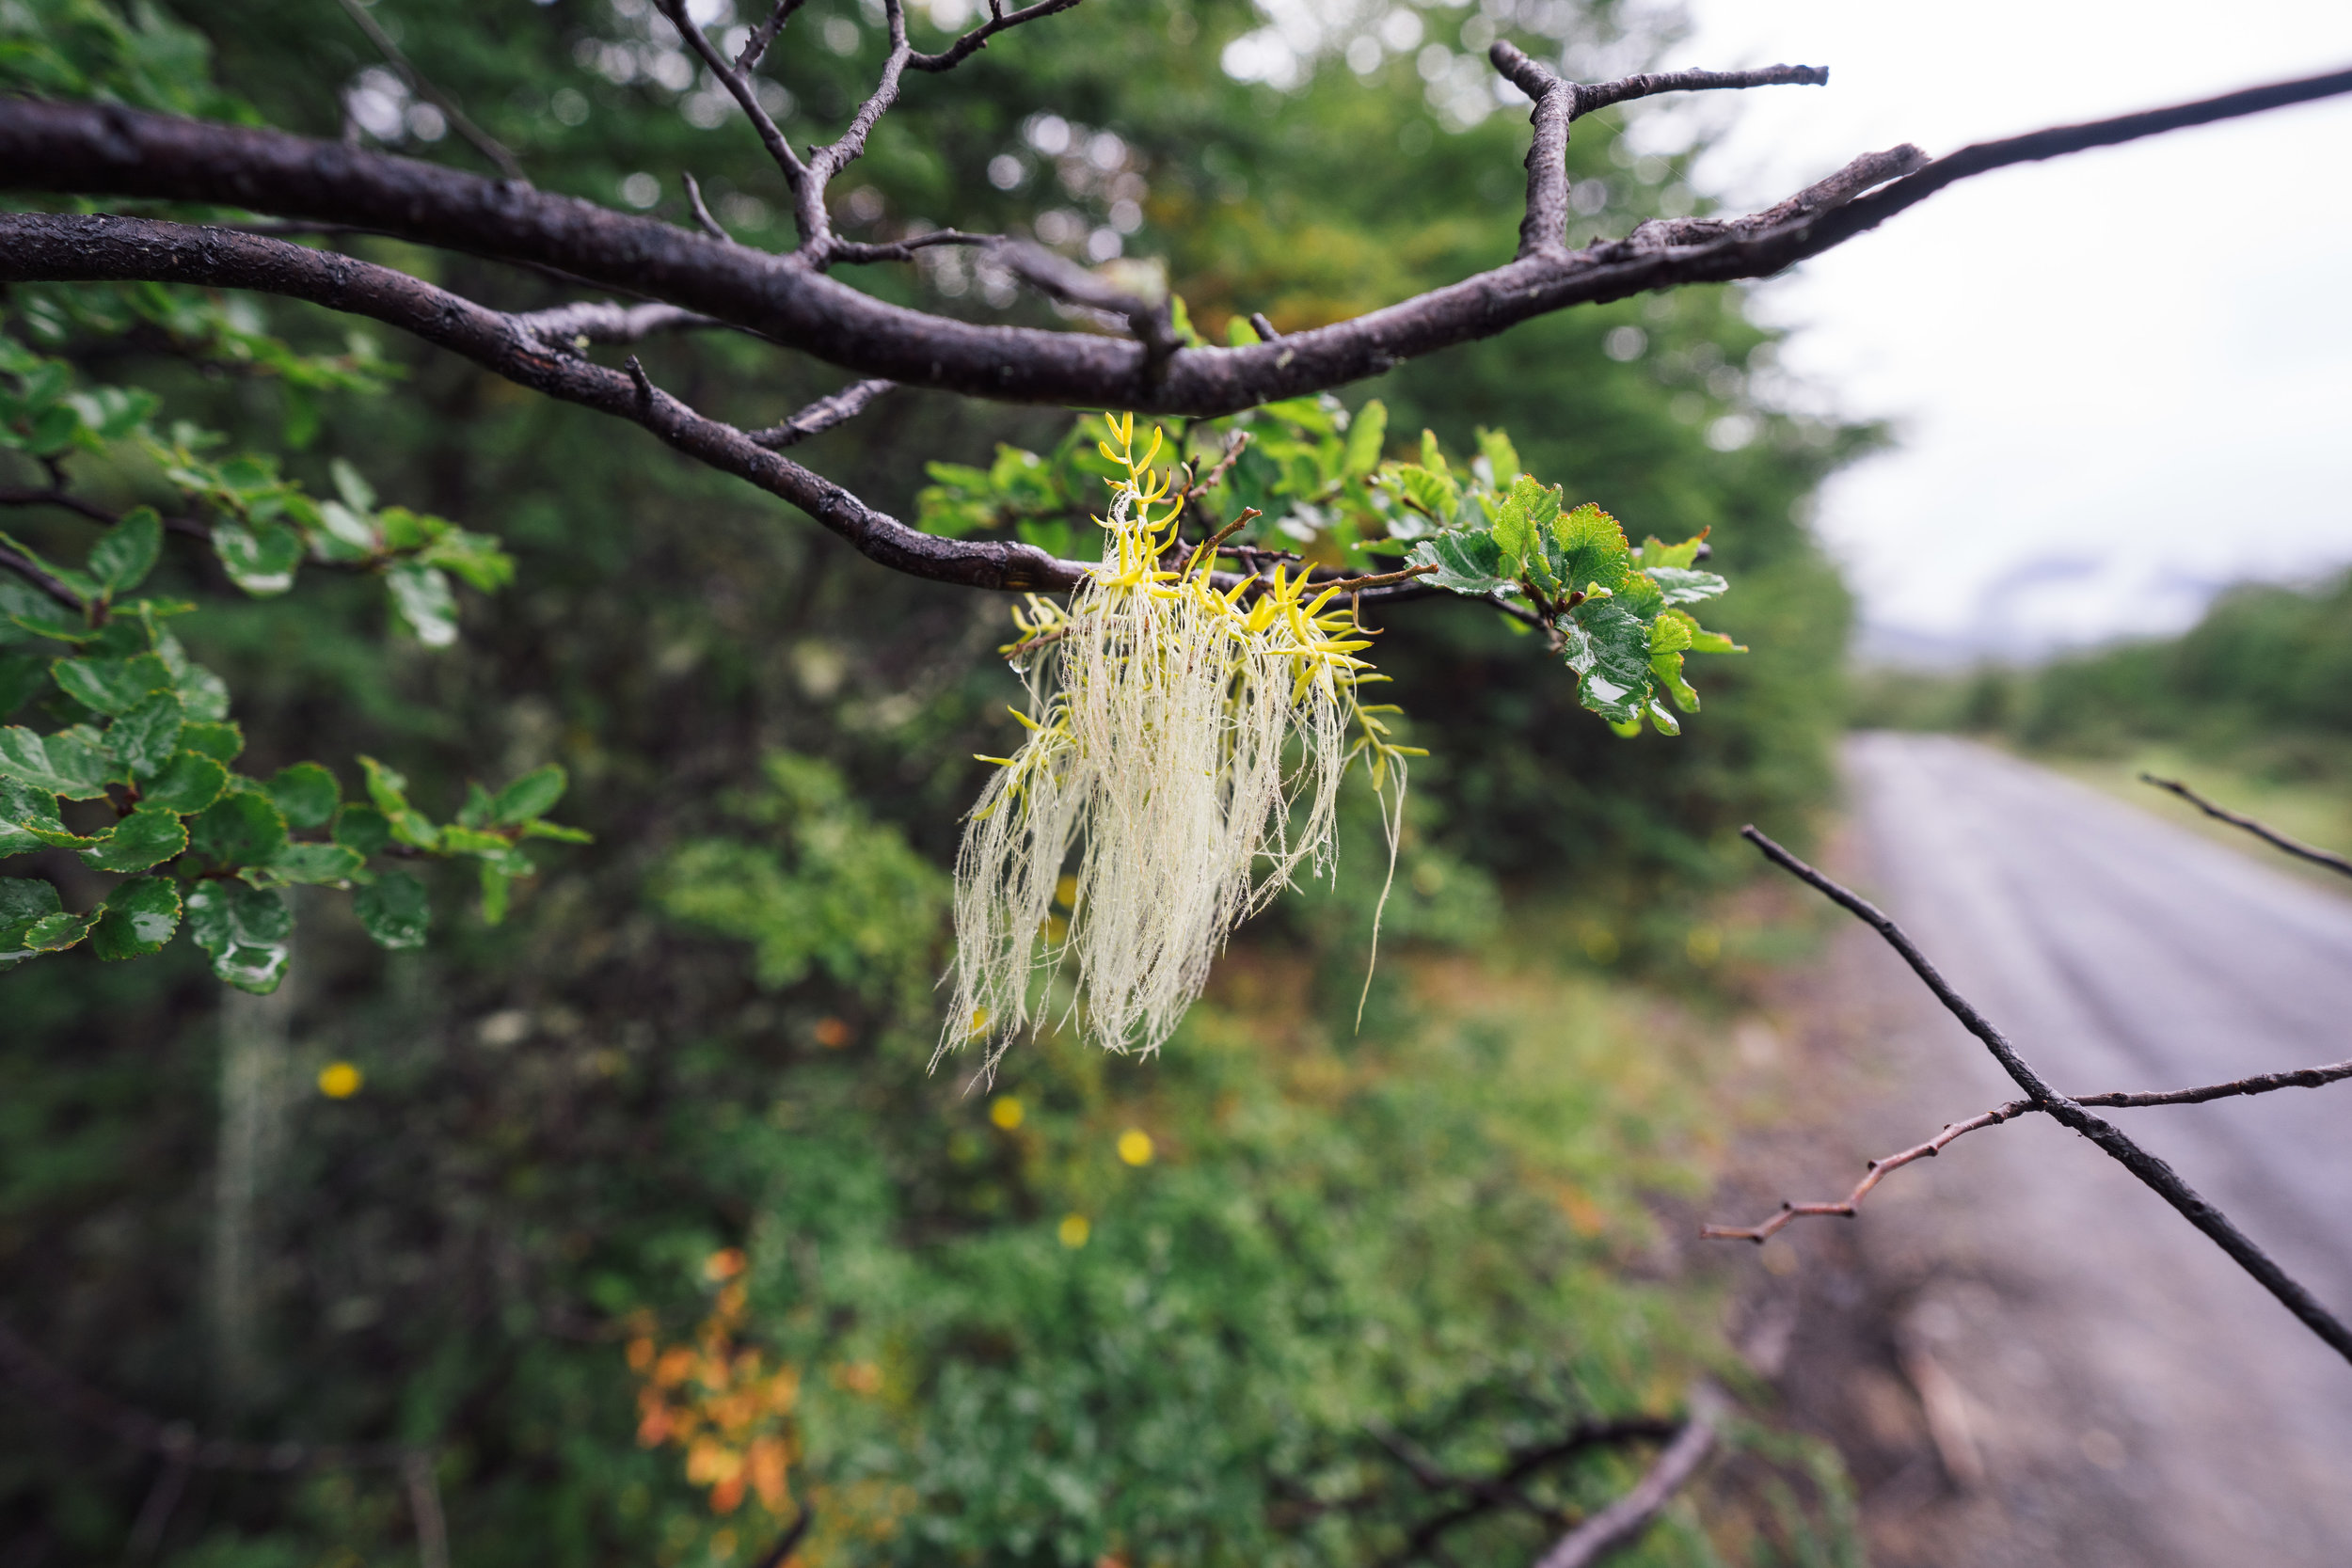 A small "Usnea" lichen on a tree branch